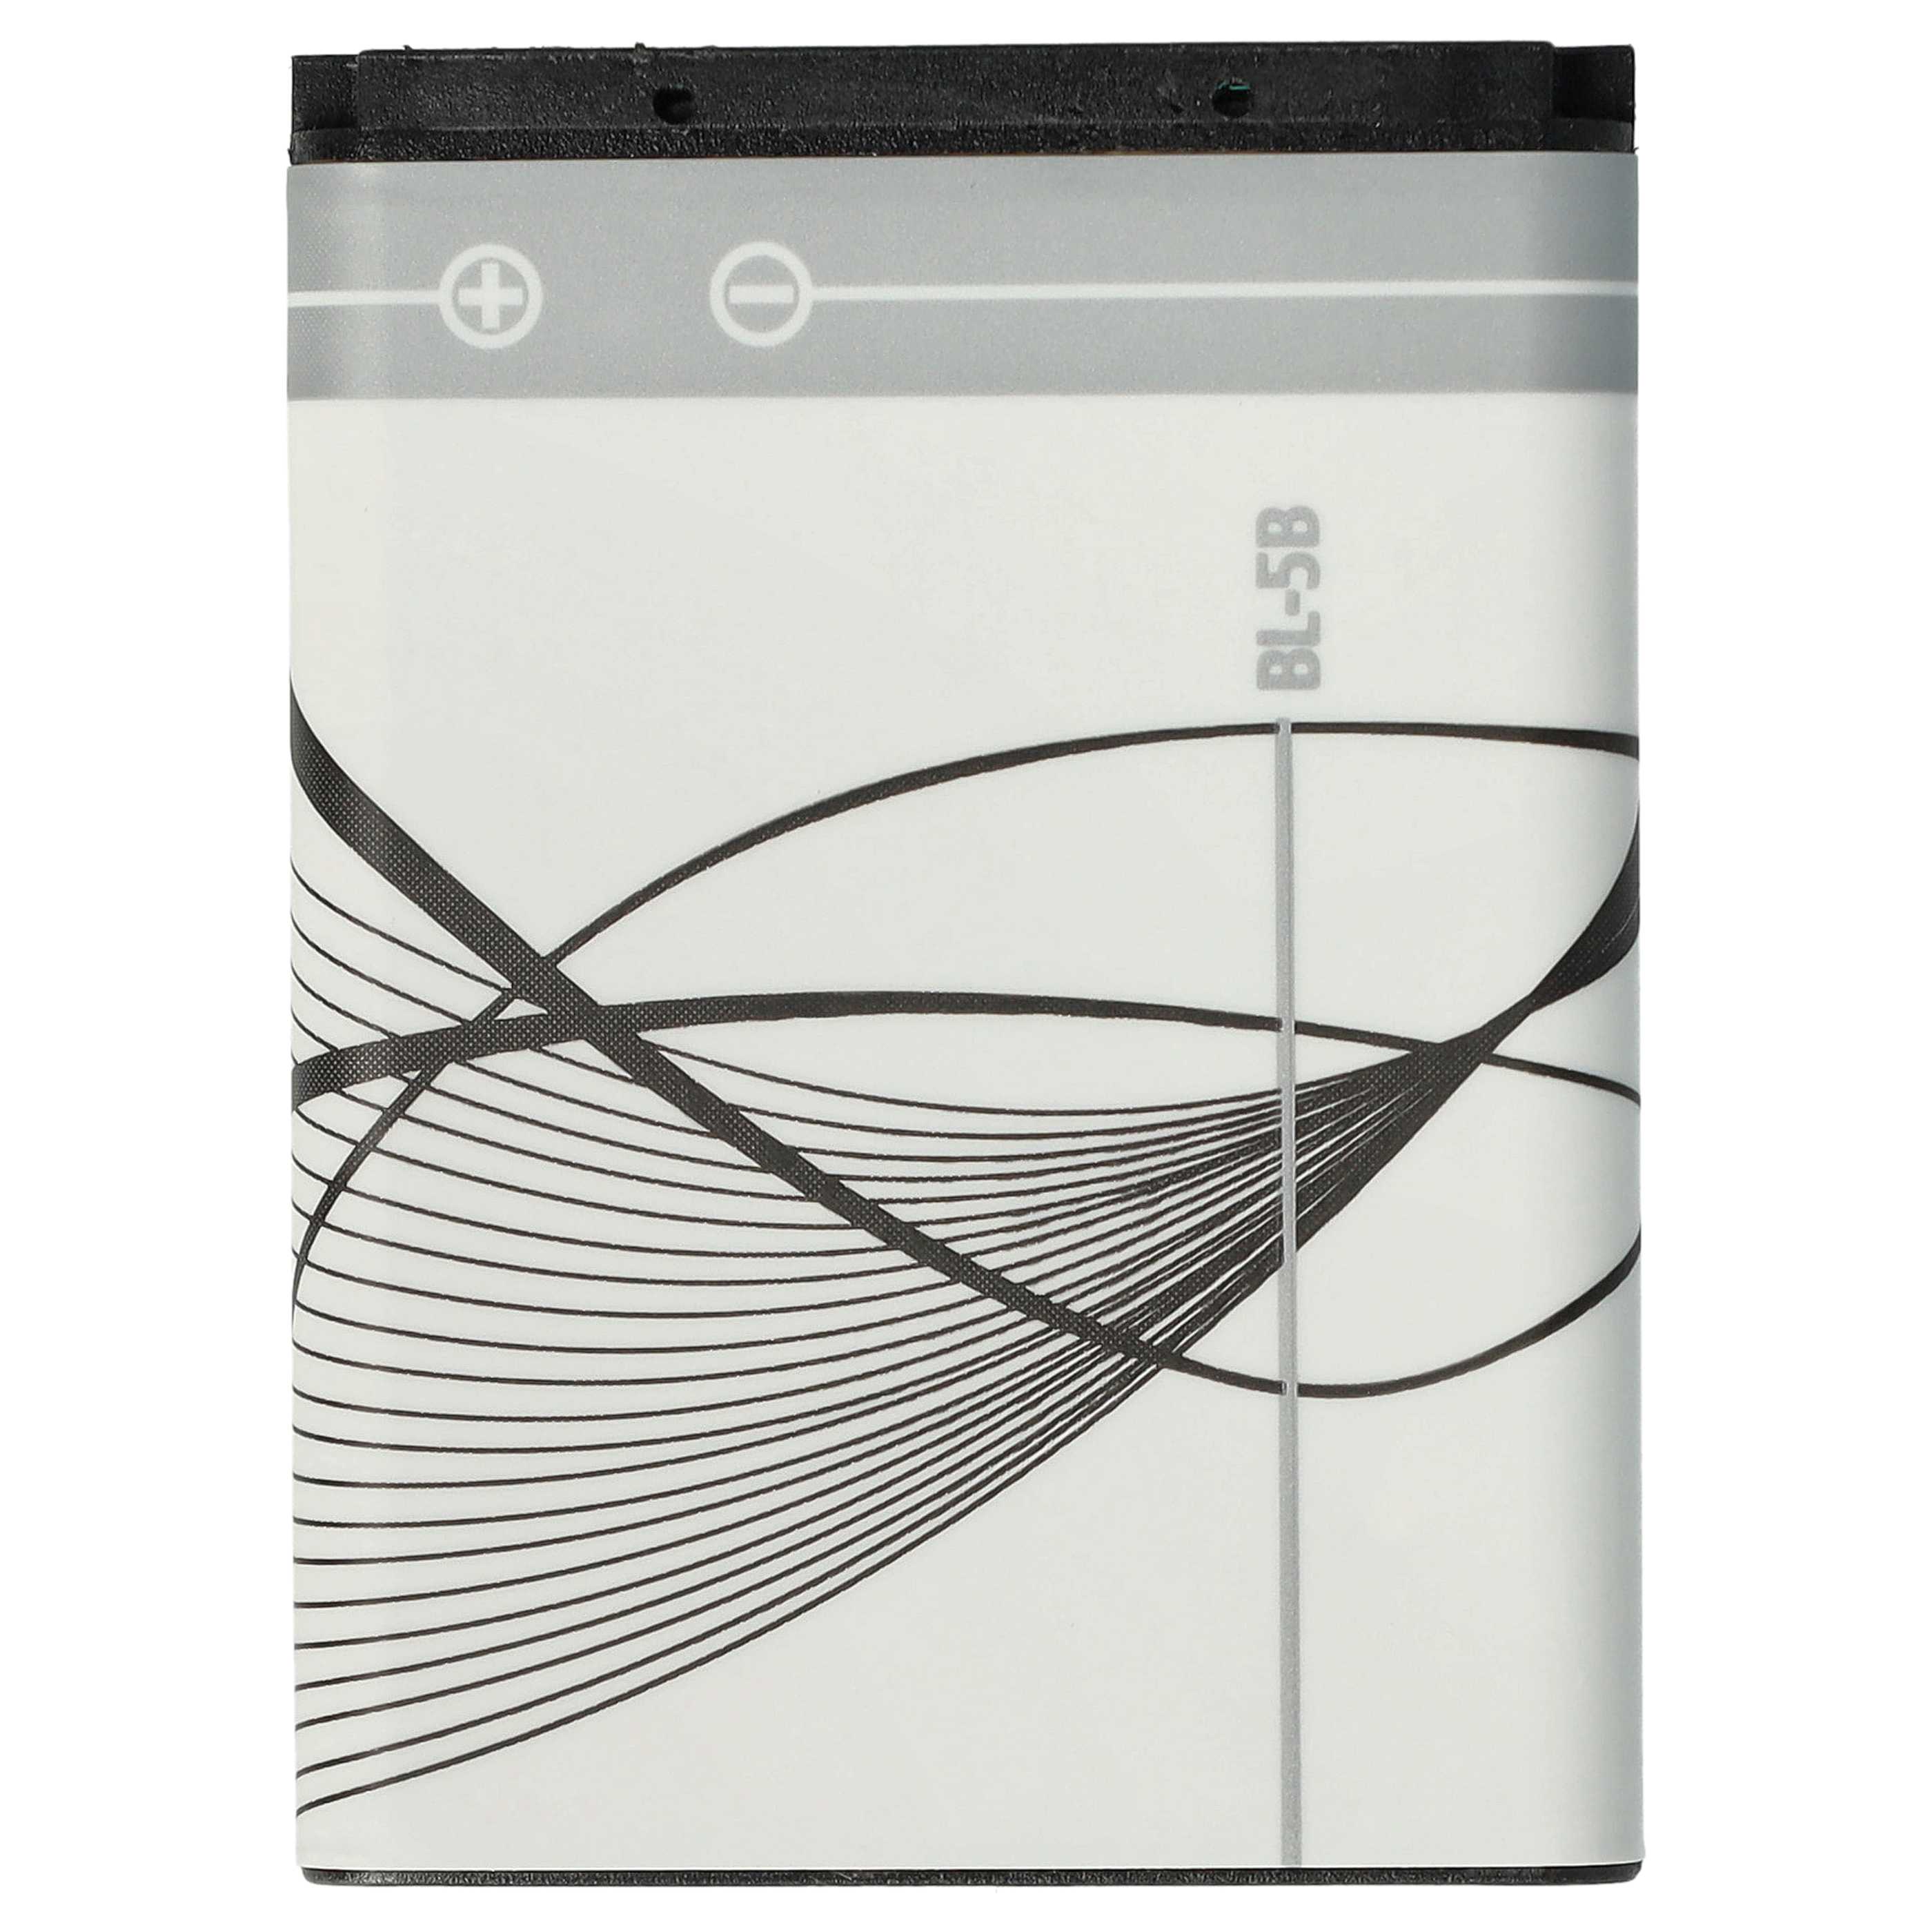 Batería reemplaza Blu N5B80T para móvil, teléfono Vodafone - 600 mAh 3,7 V Li-Ion